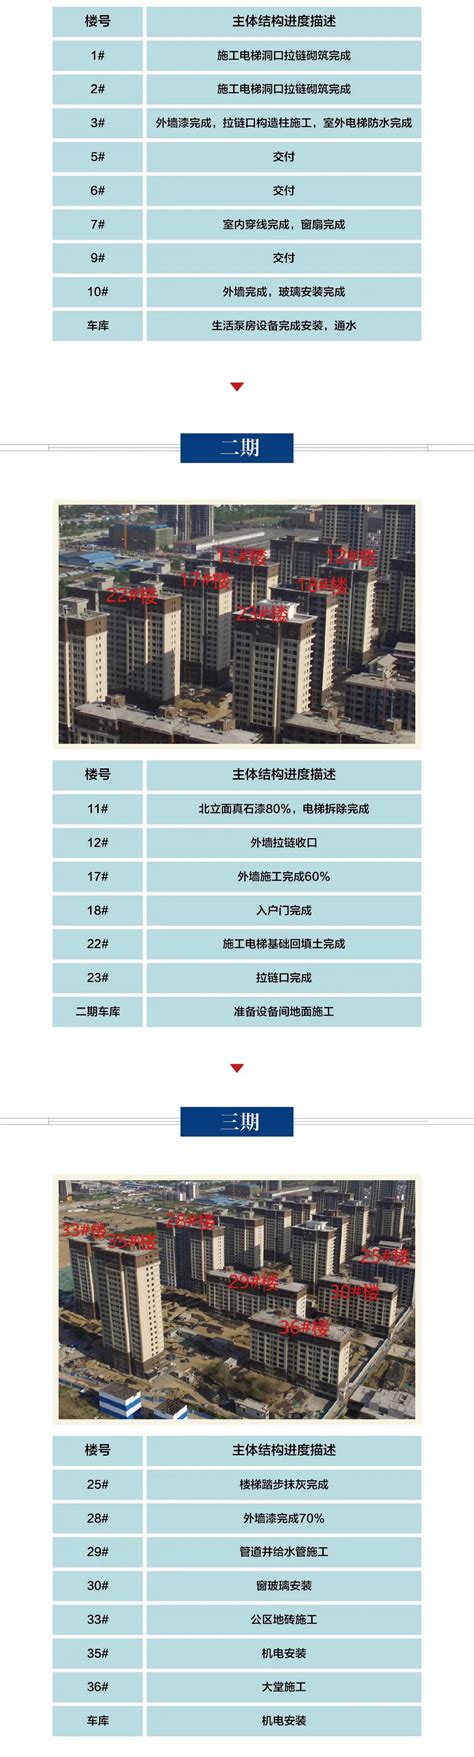 住在邢台·第1房产--旭阳学府-西区 | 2022年5月份工程进度播报 - 住在邢台丨第1房产